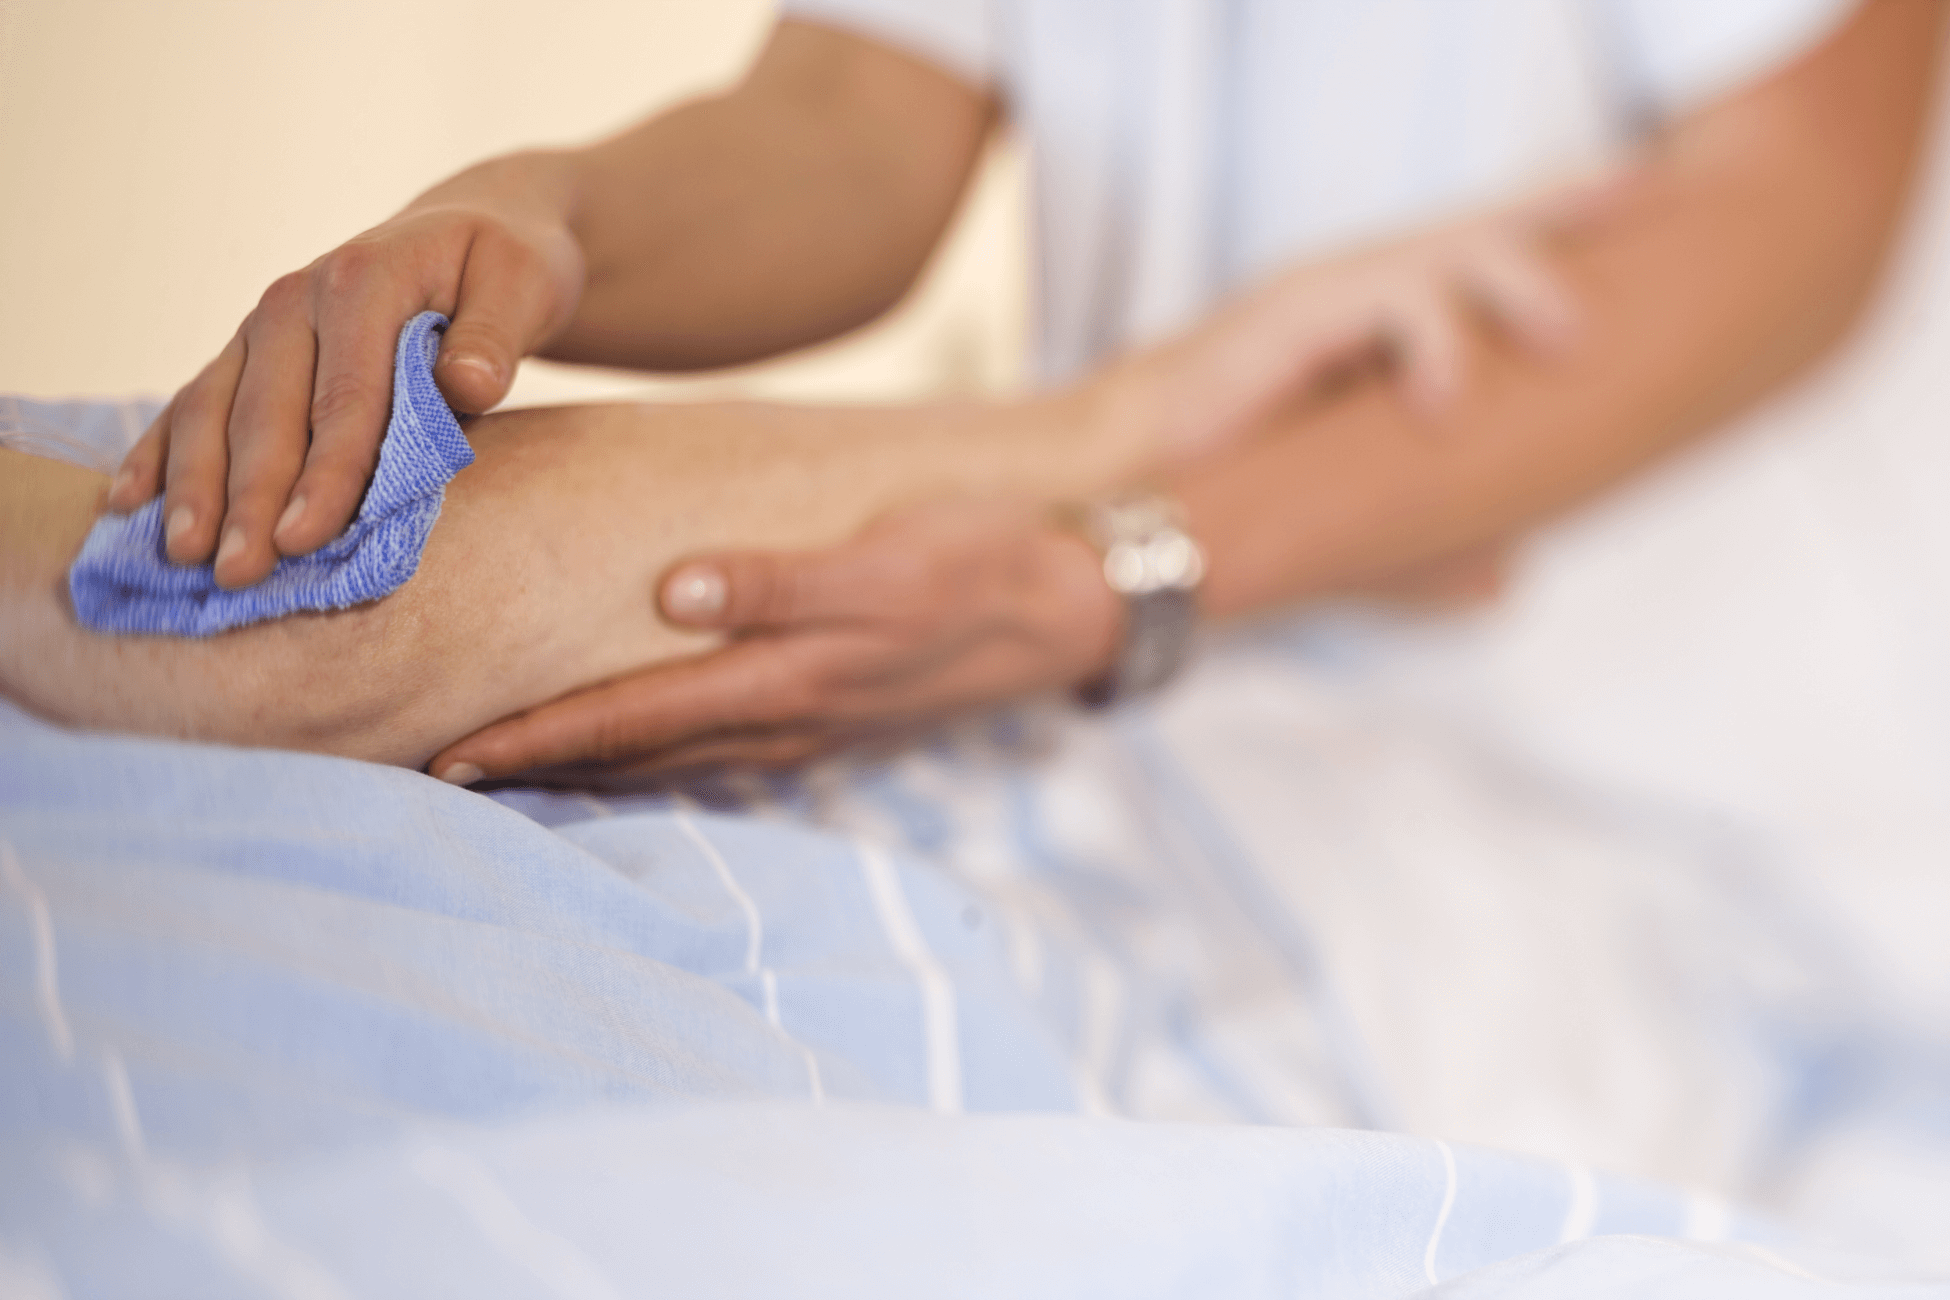 Der Arm einer pflegebedürftigen Person wird sanft mit einem Waschlappen gereinigt